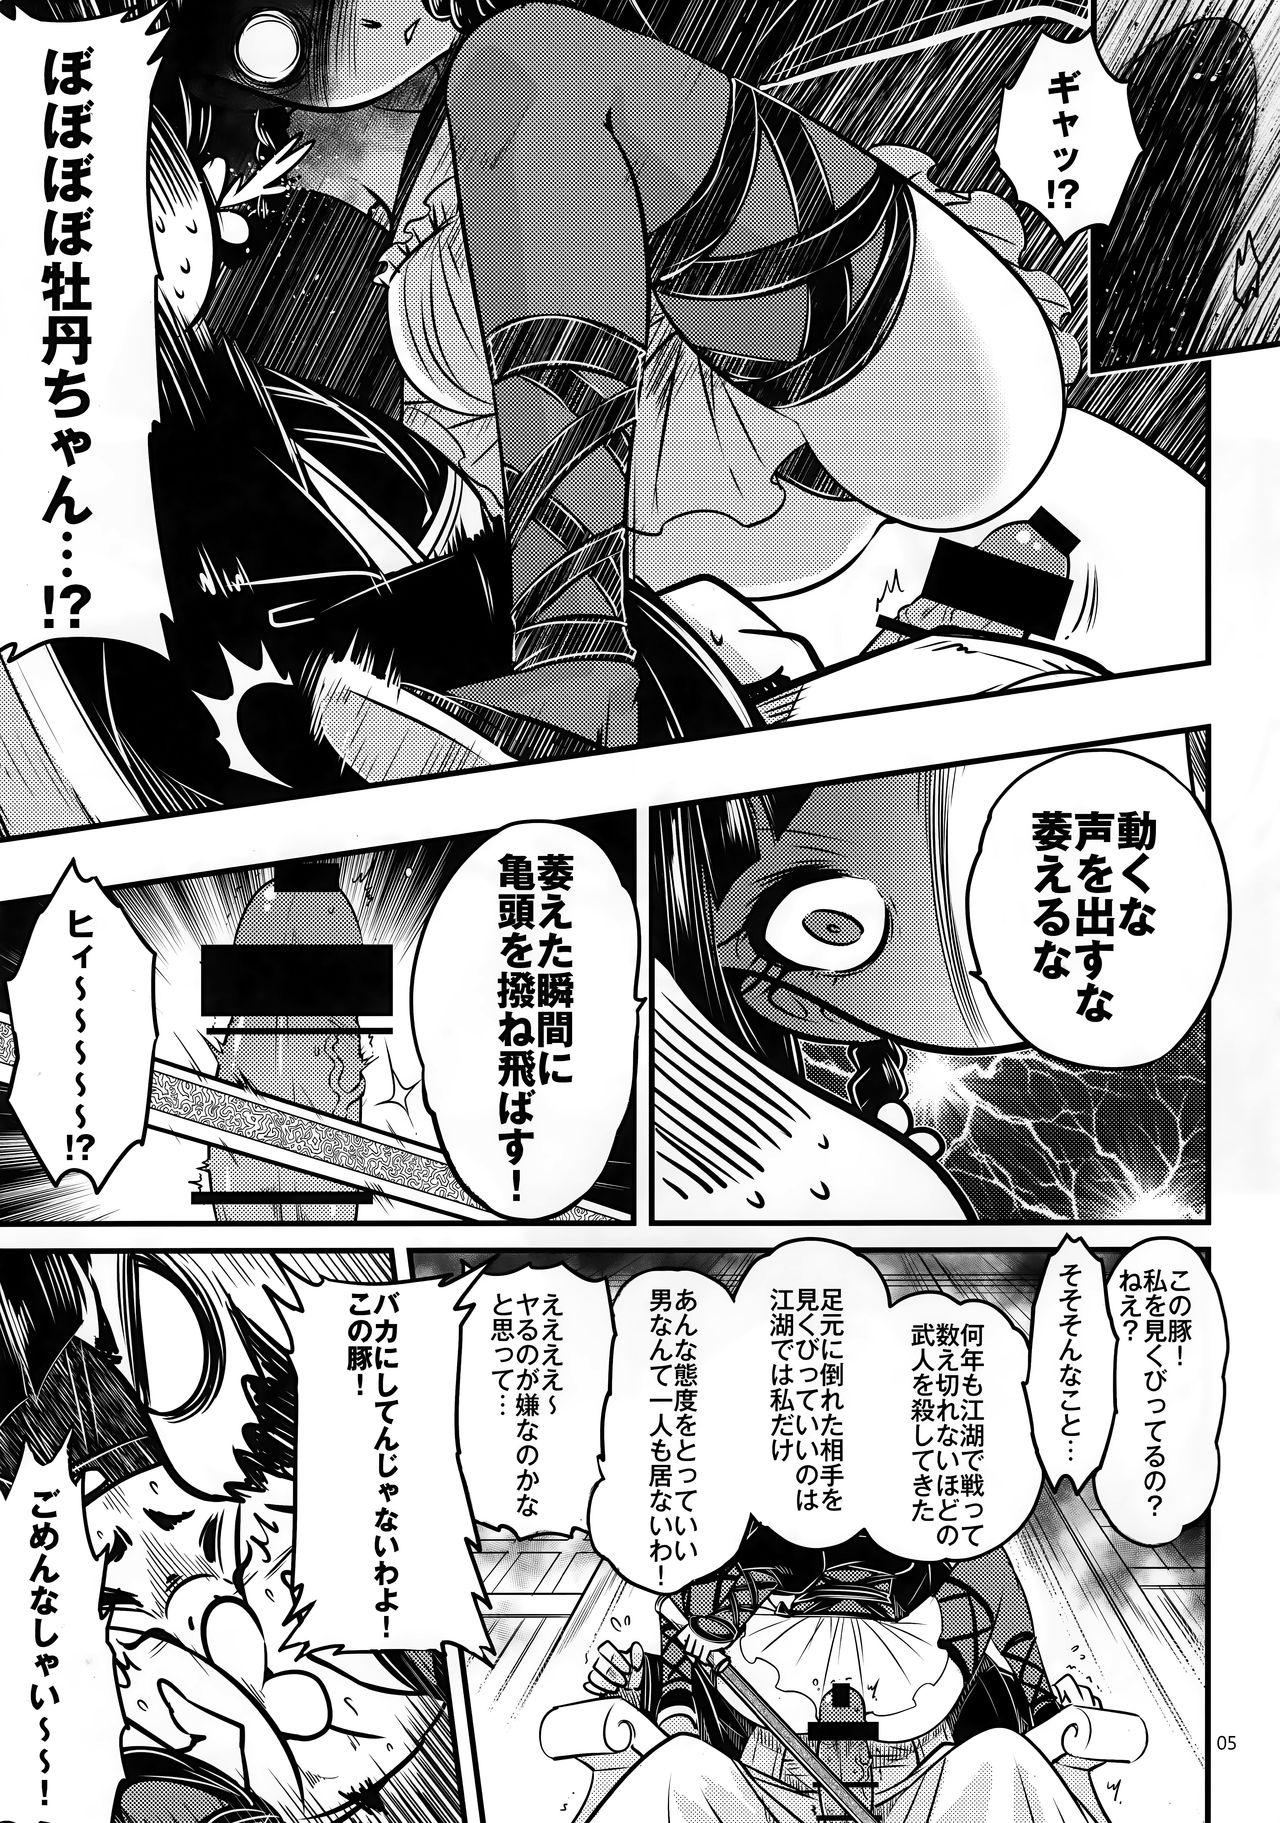 Blackcocks Hyakkasou3 《Hekigan rasetsu no gyakushuu》 - Original Muscles - Page 6